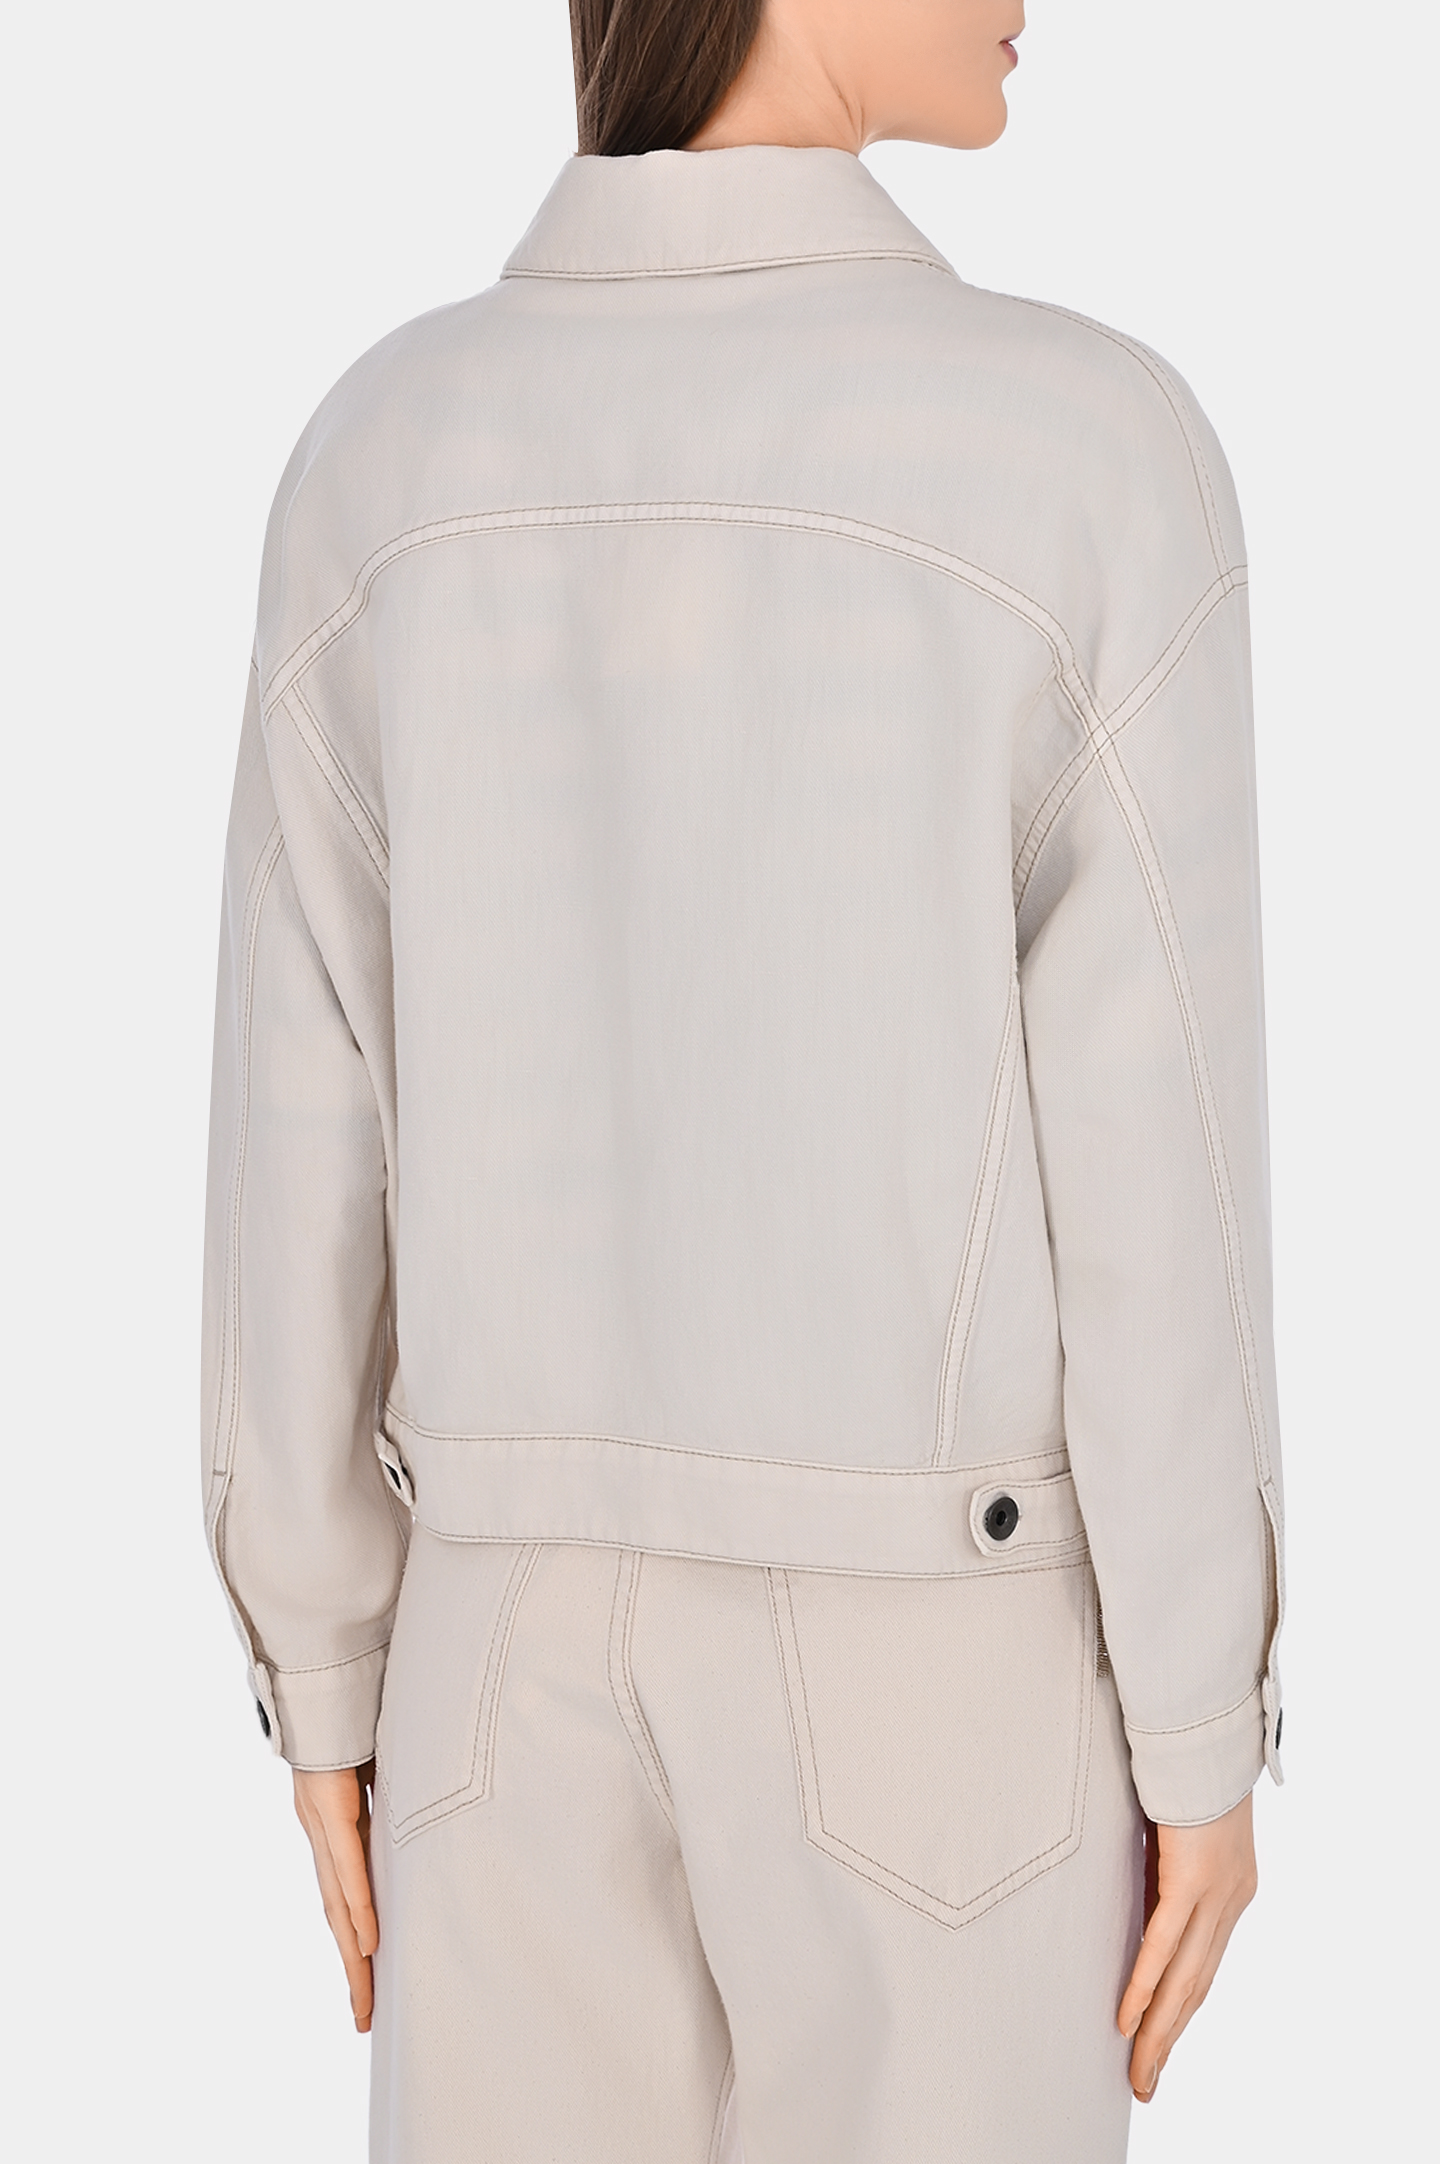 Джинсовая куртка с карманами BRUNELLO  CUCINELLI ML9962994, цвет: Молочный, Женский